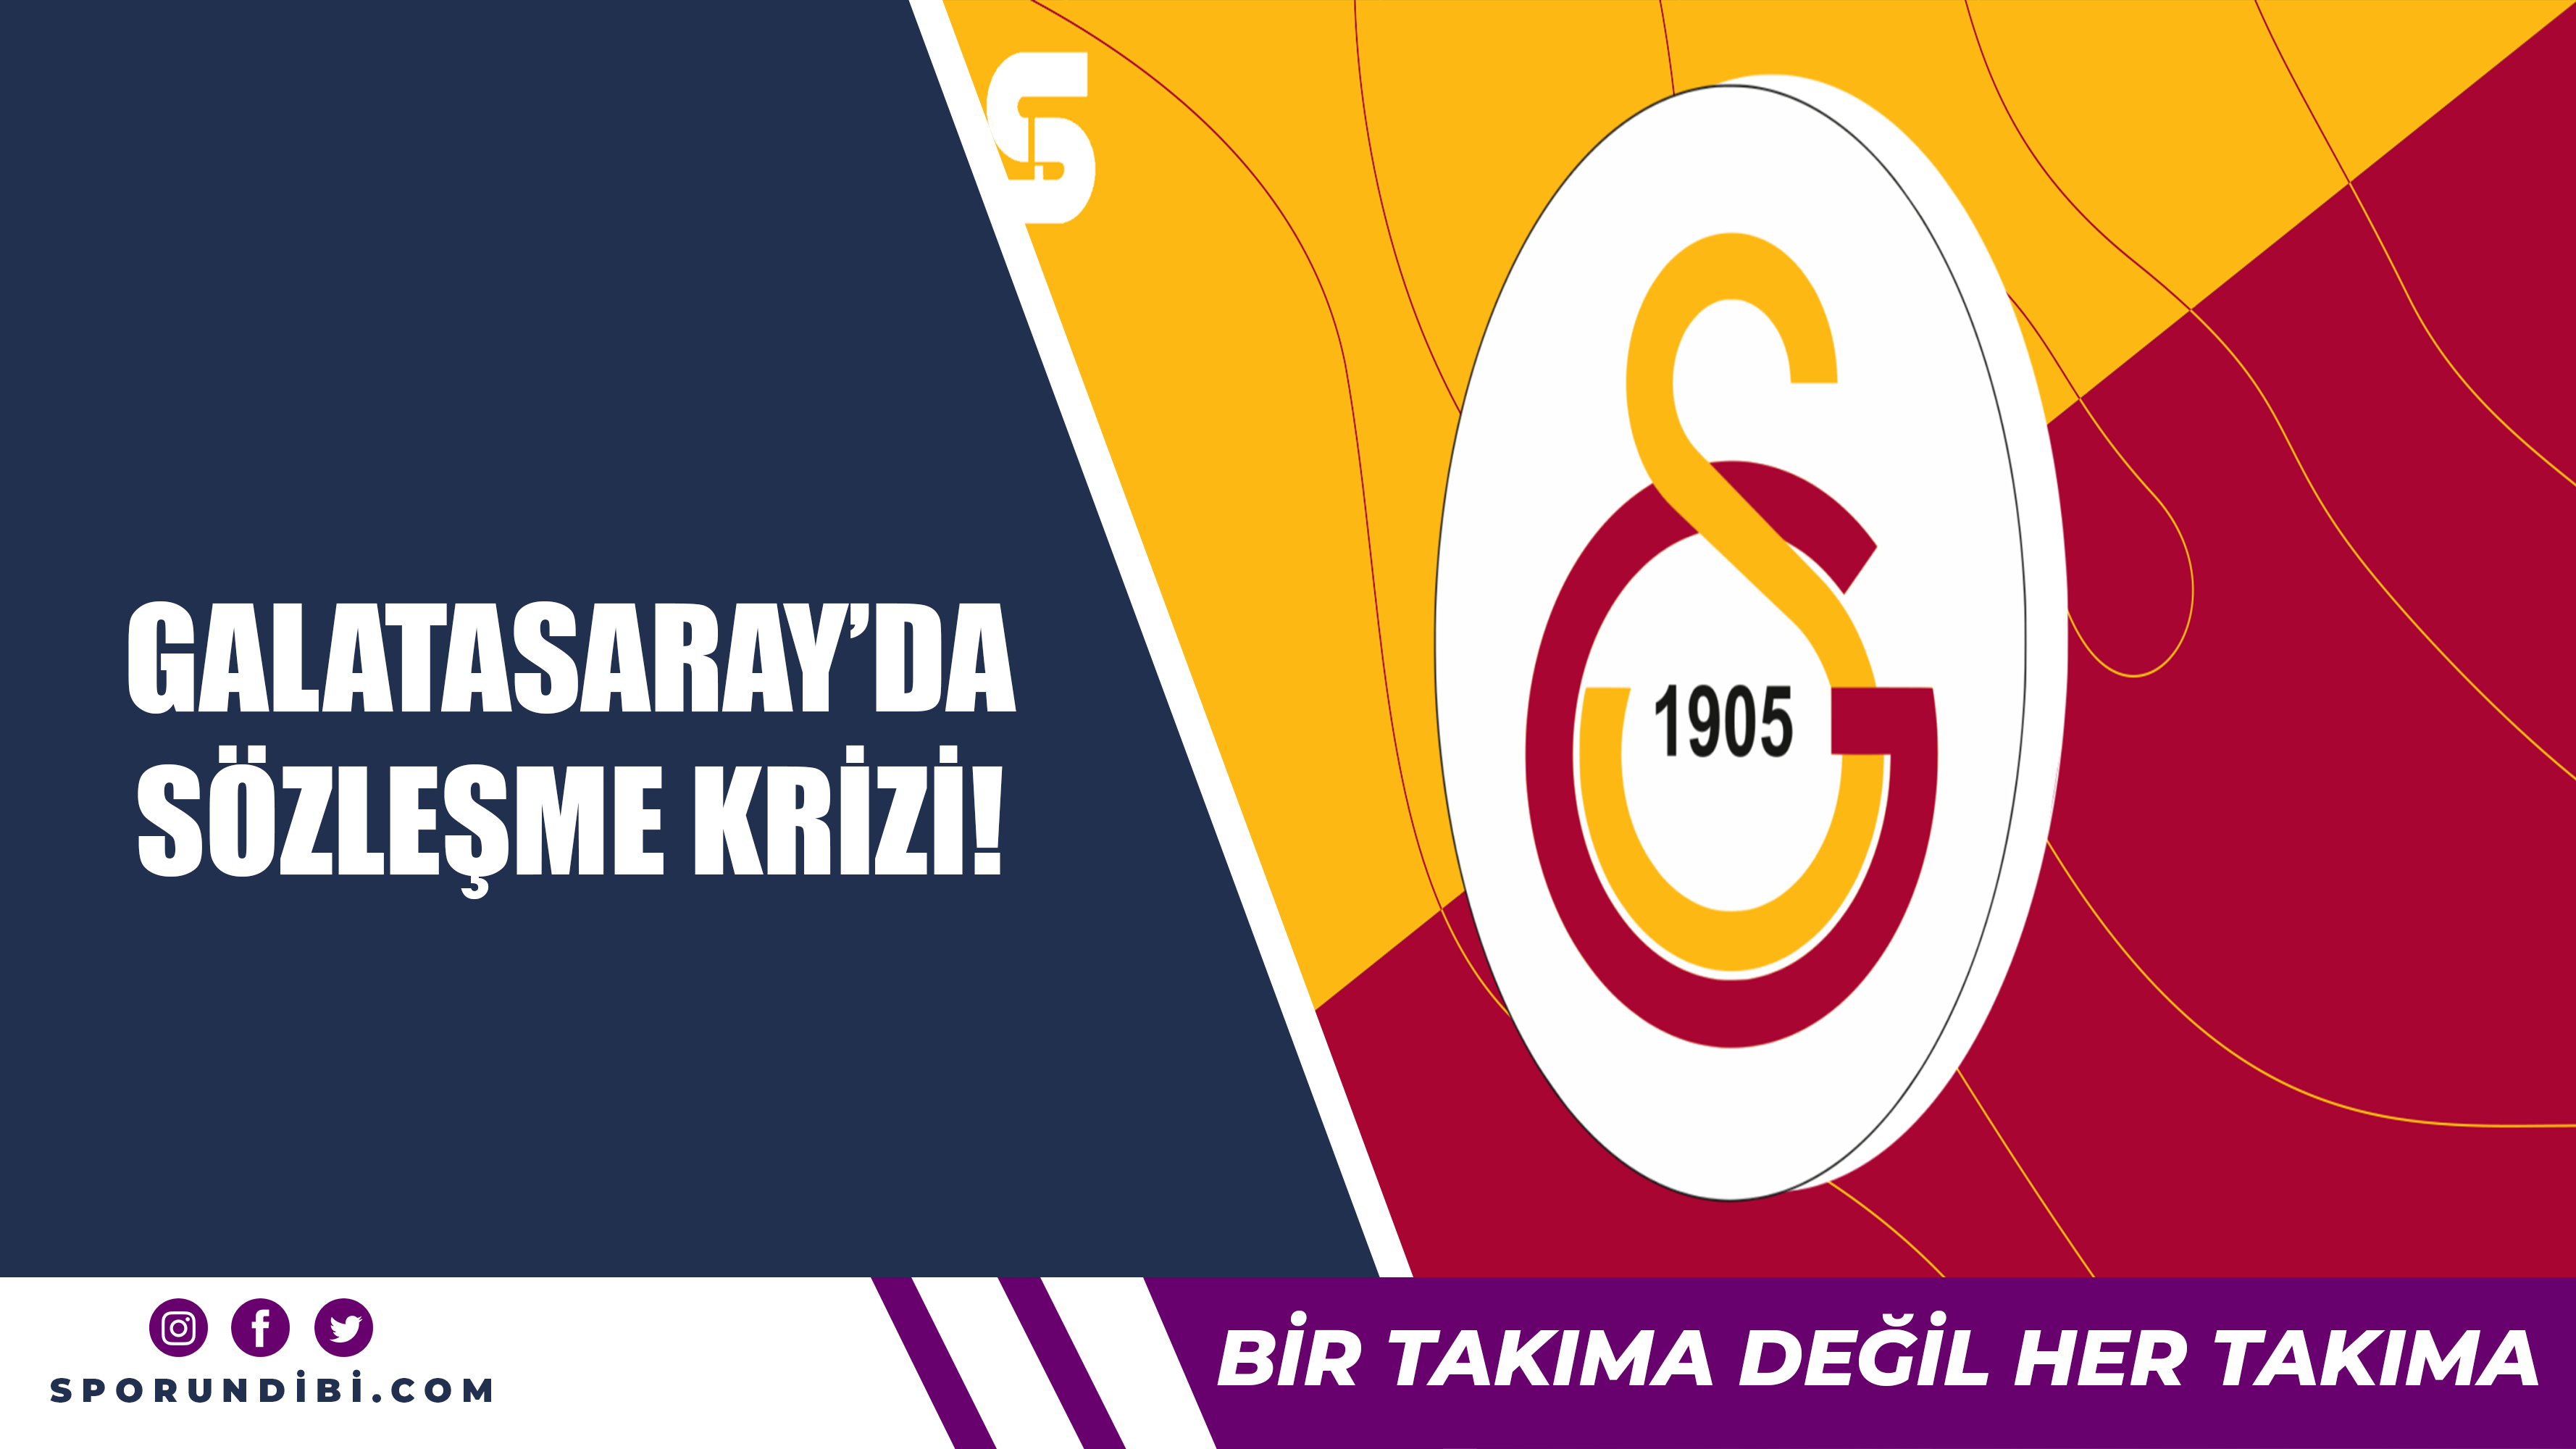 Galatasaray'da sözleşme krizi!